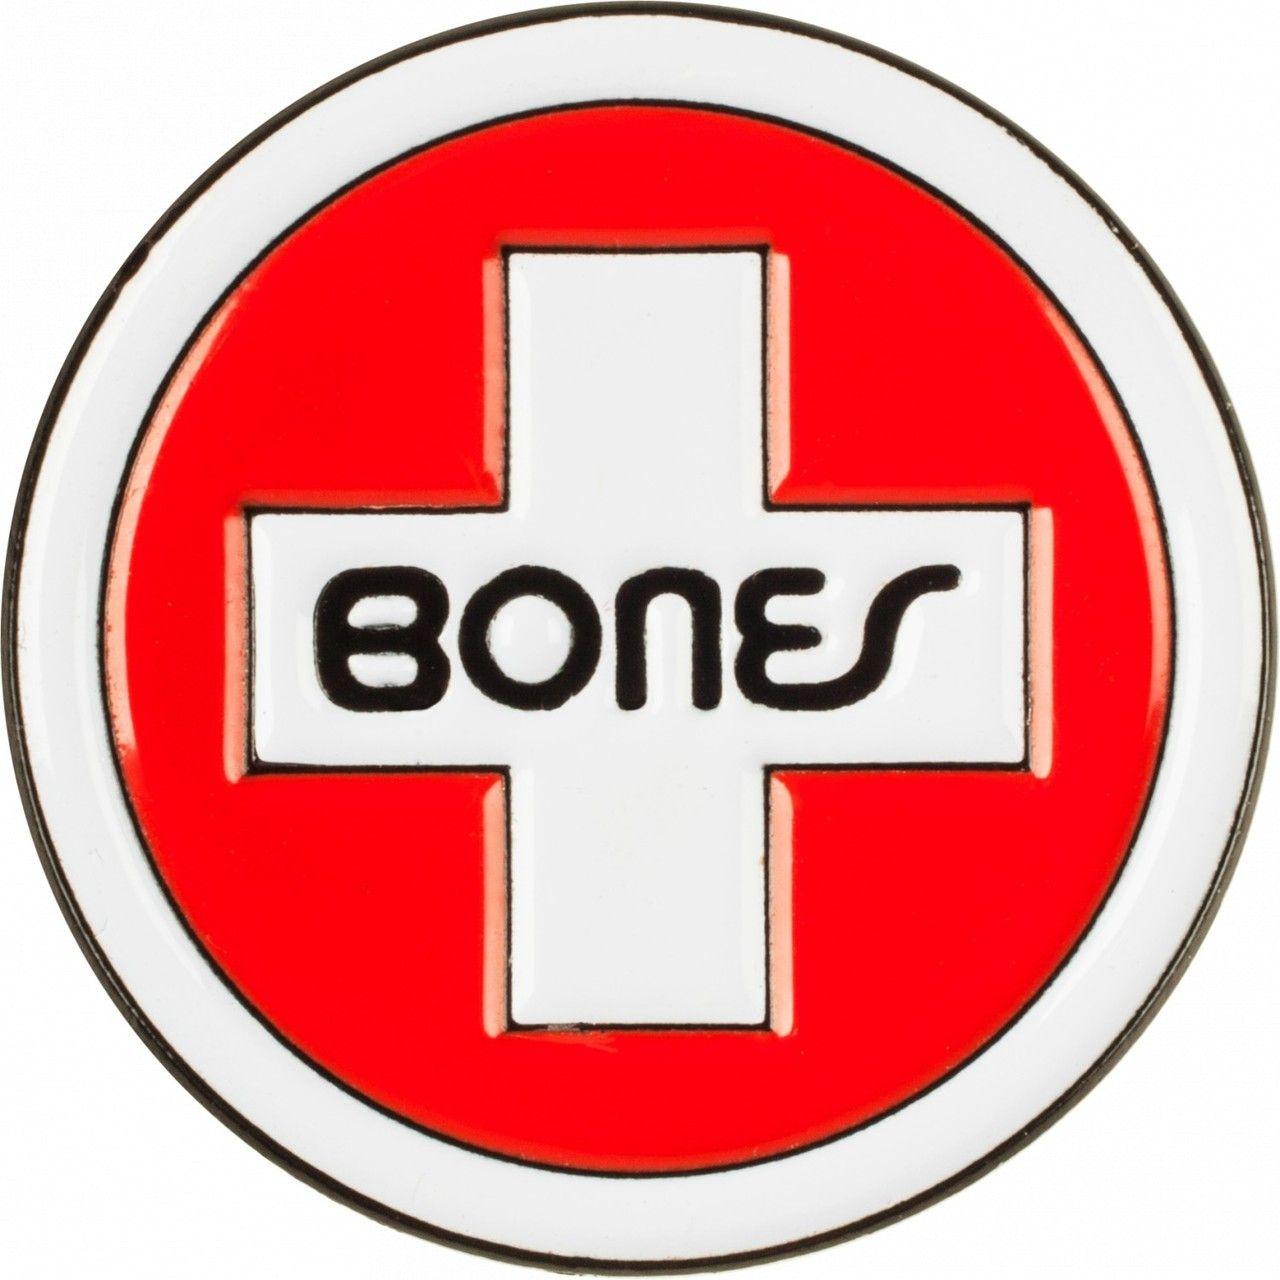 Bones Logo - Bones Swiss Circle Cross Logo Lapel Pin